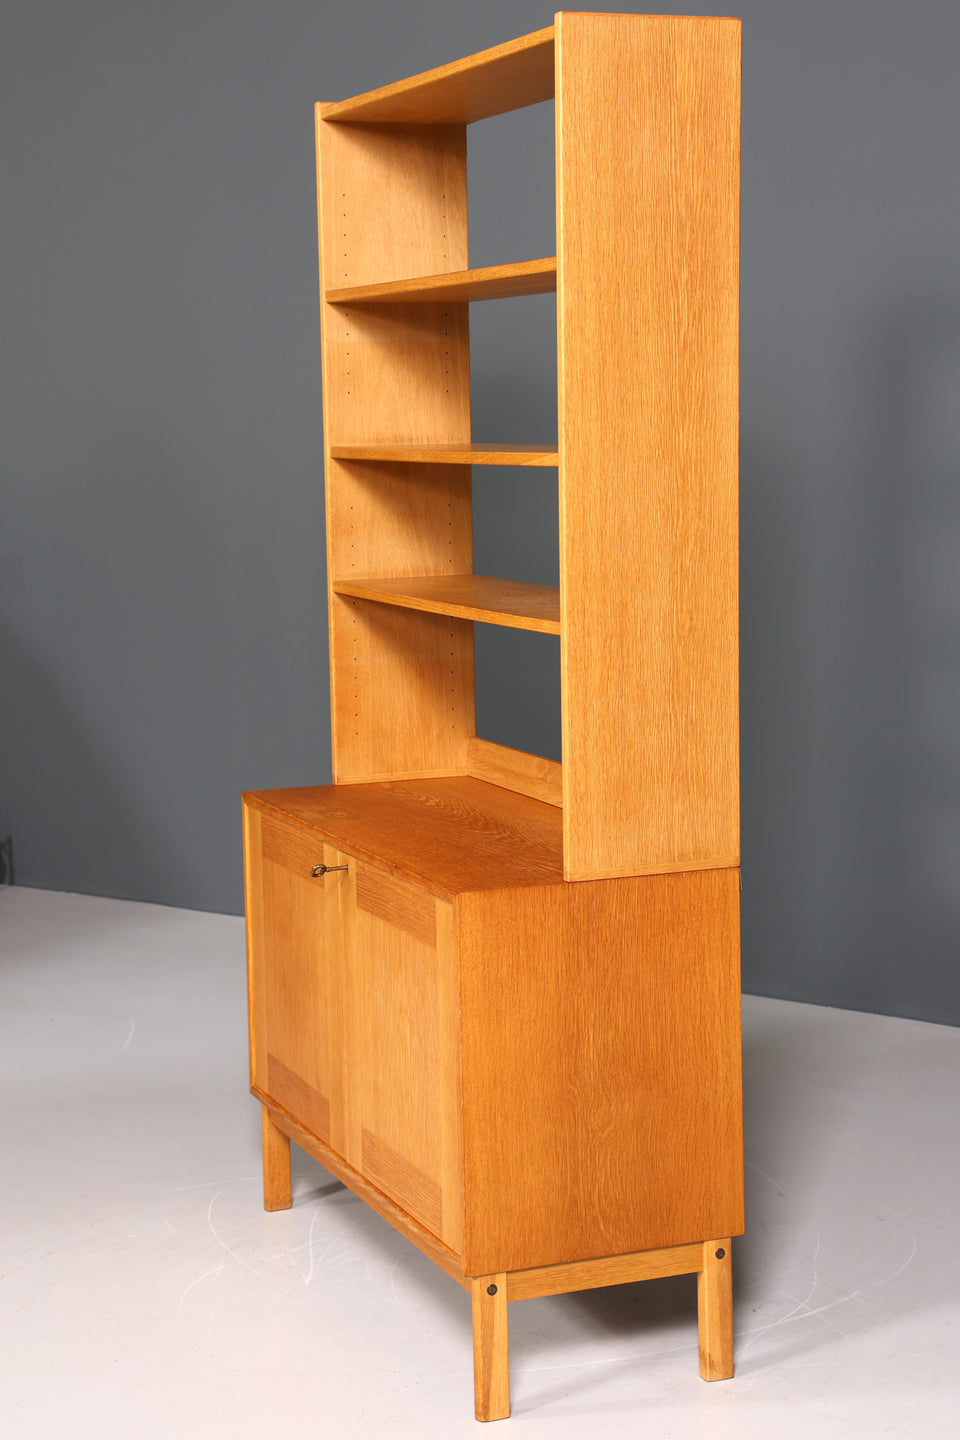 Wunderschöner Mid Century Regal Schrank Vintage Highboard Bücherregal Holz Kommode